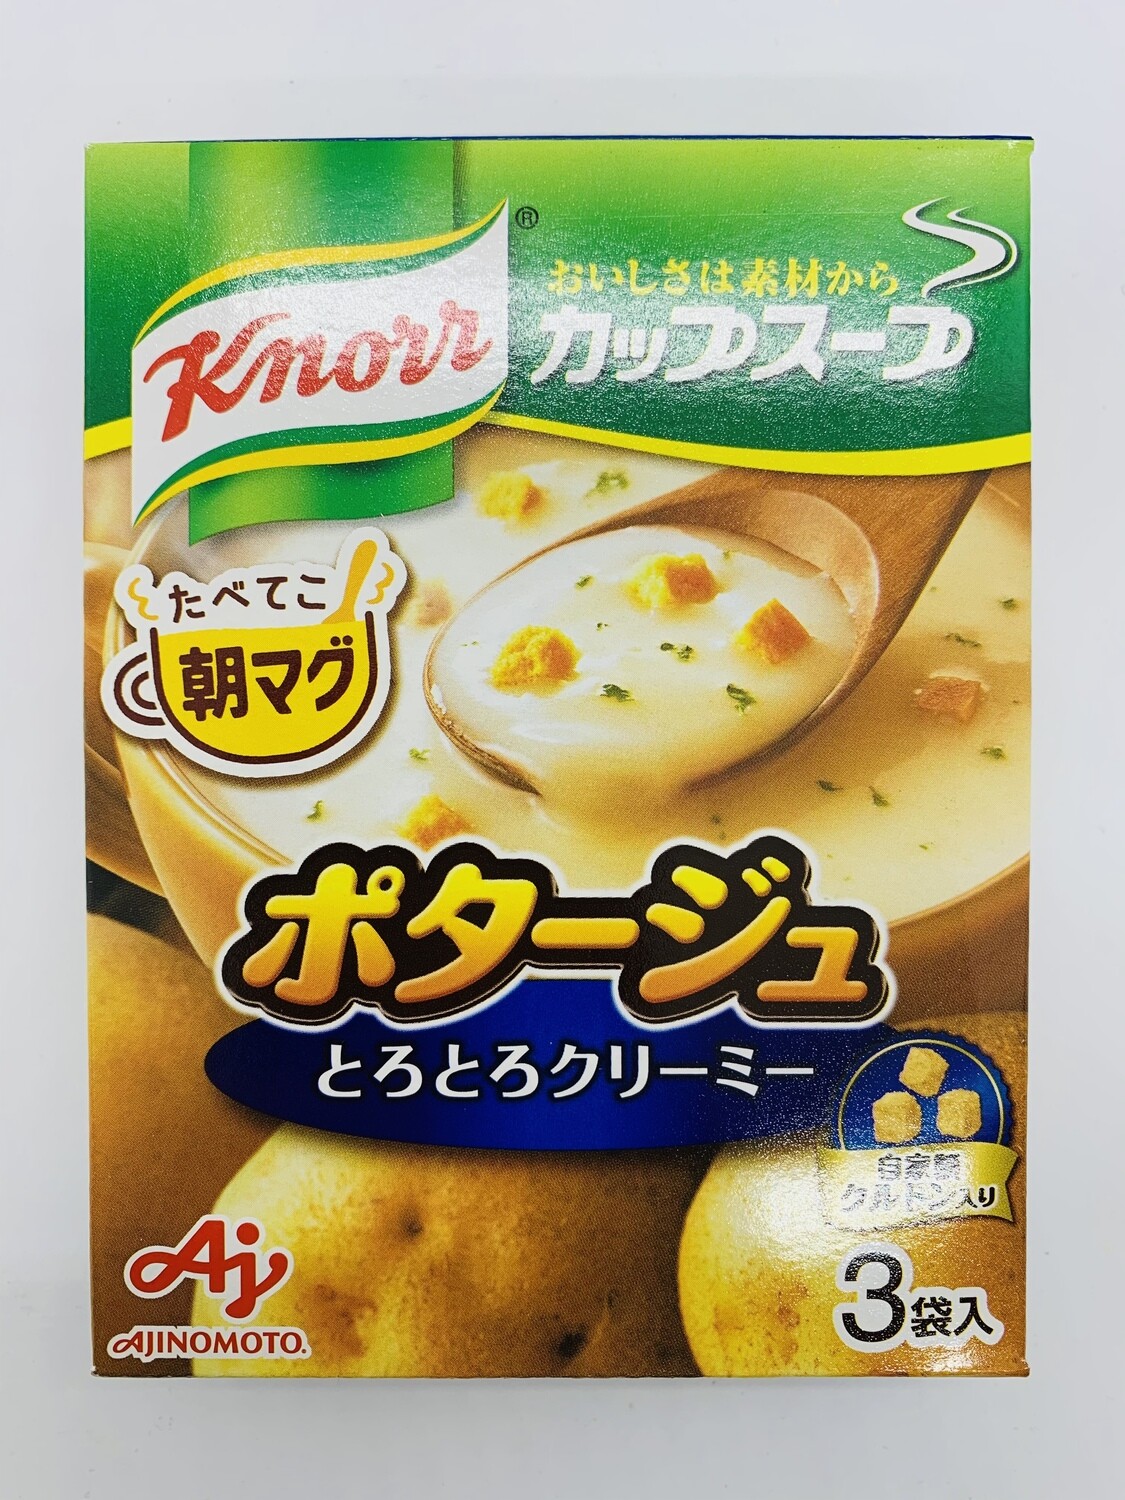 KNORR Cup soup Potage